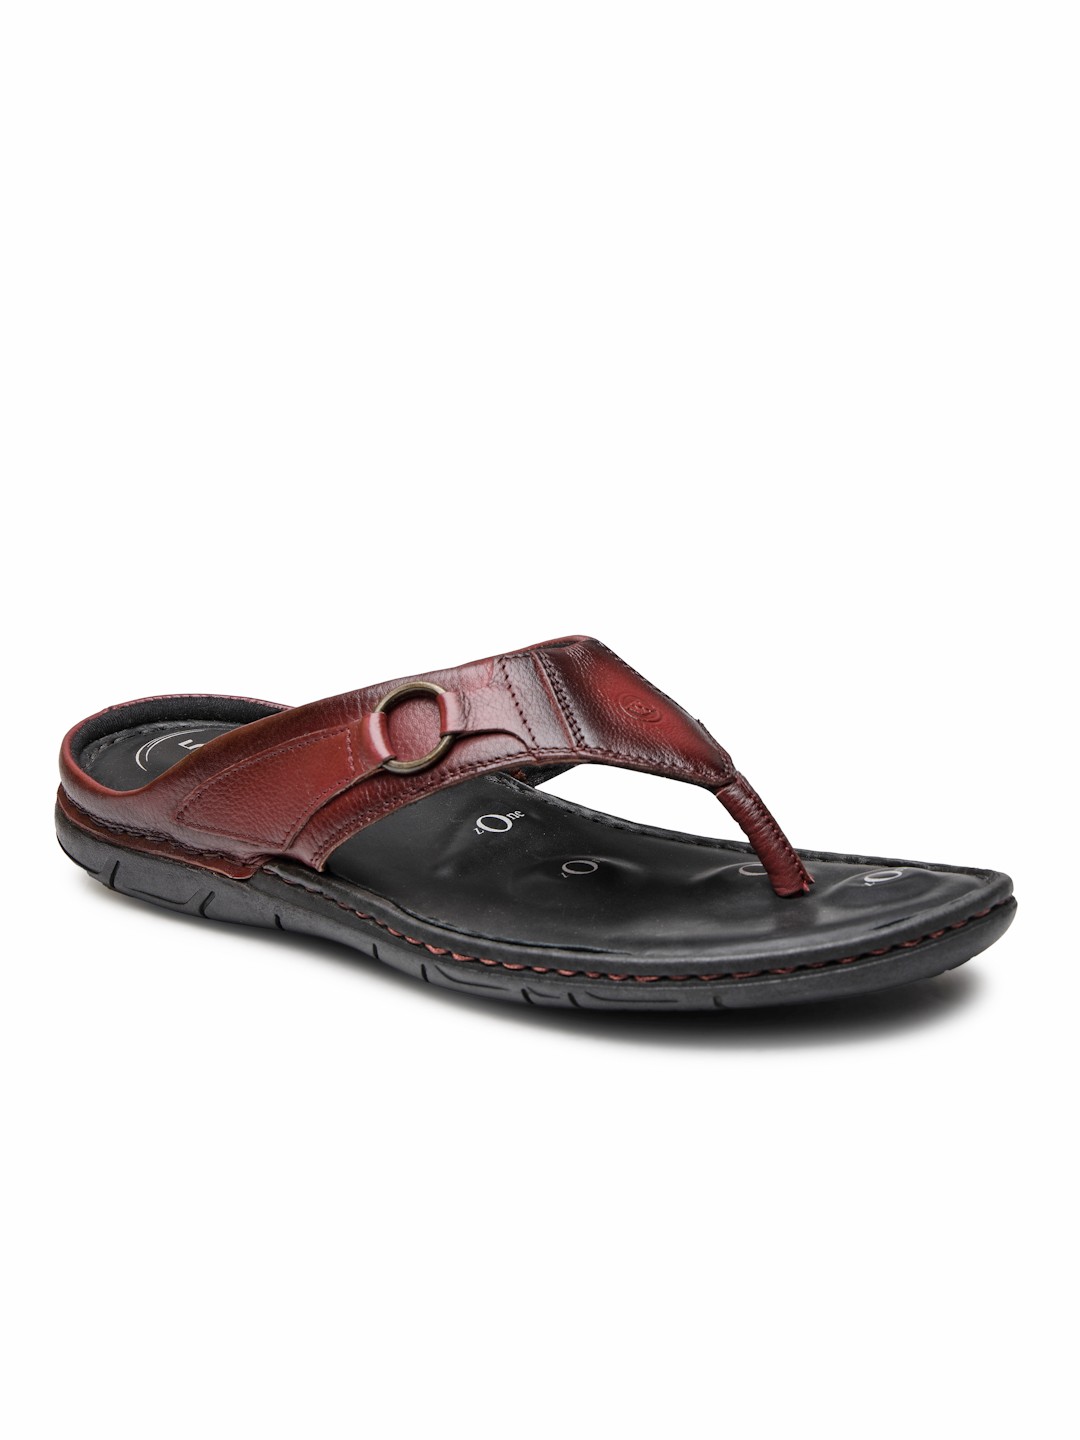 Buy Von Wellx Germany Comfort Men's Brown Slippers Riley Online in Mysore